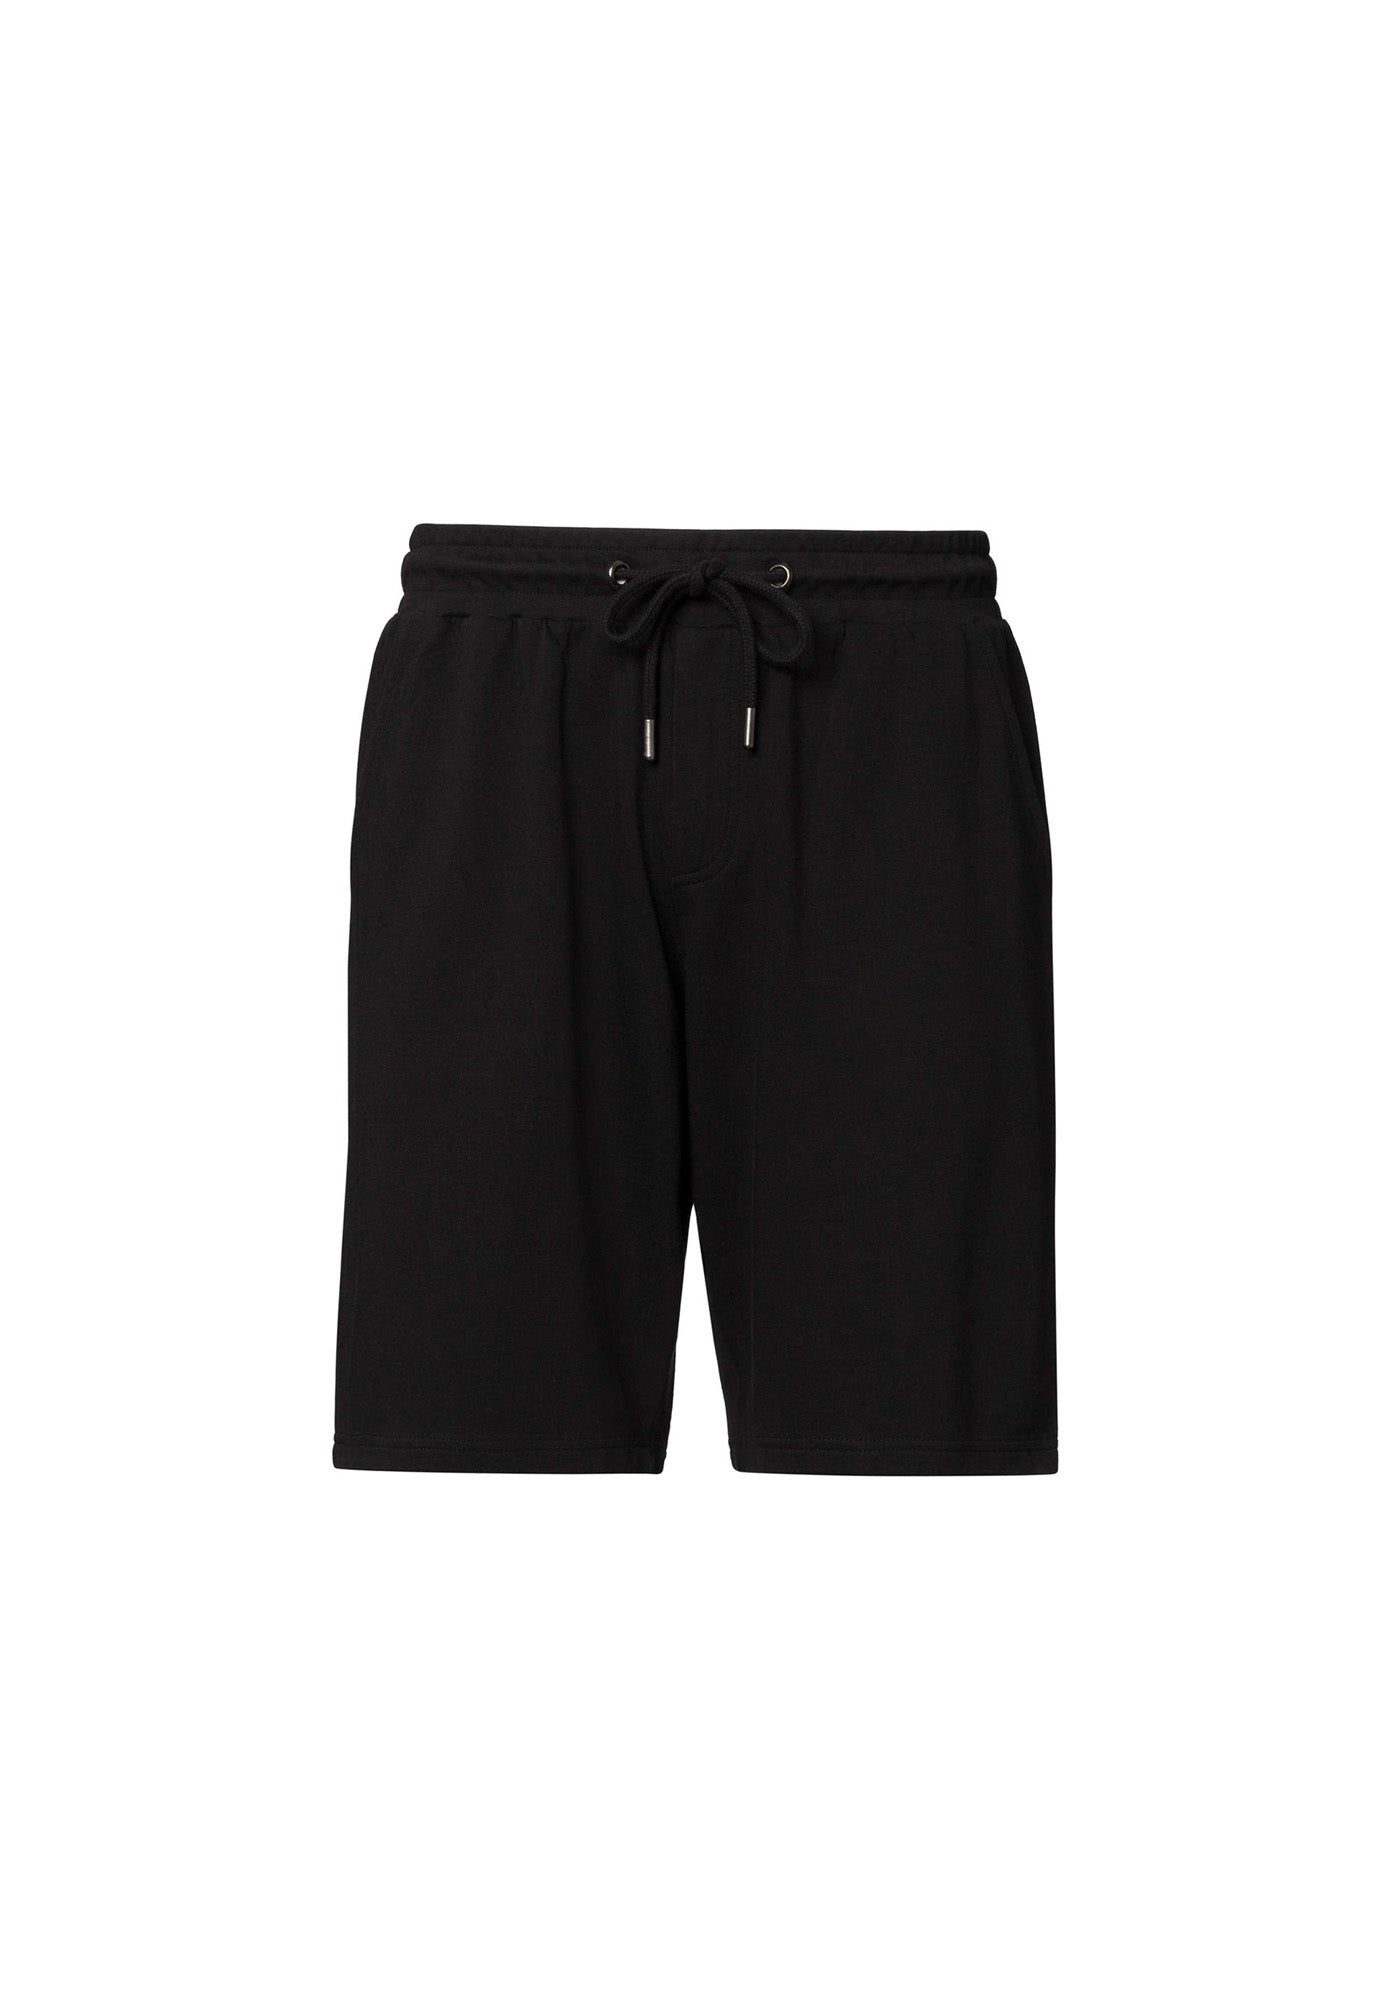 TT1020 Shorts (GOTS)